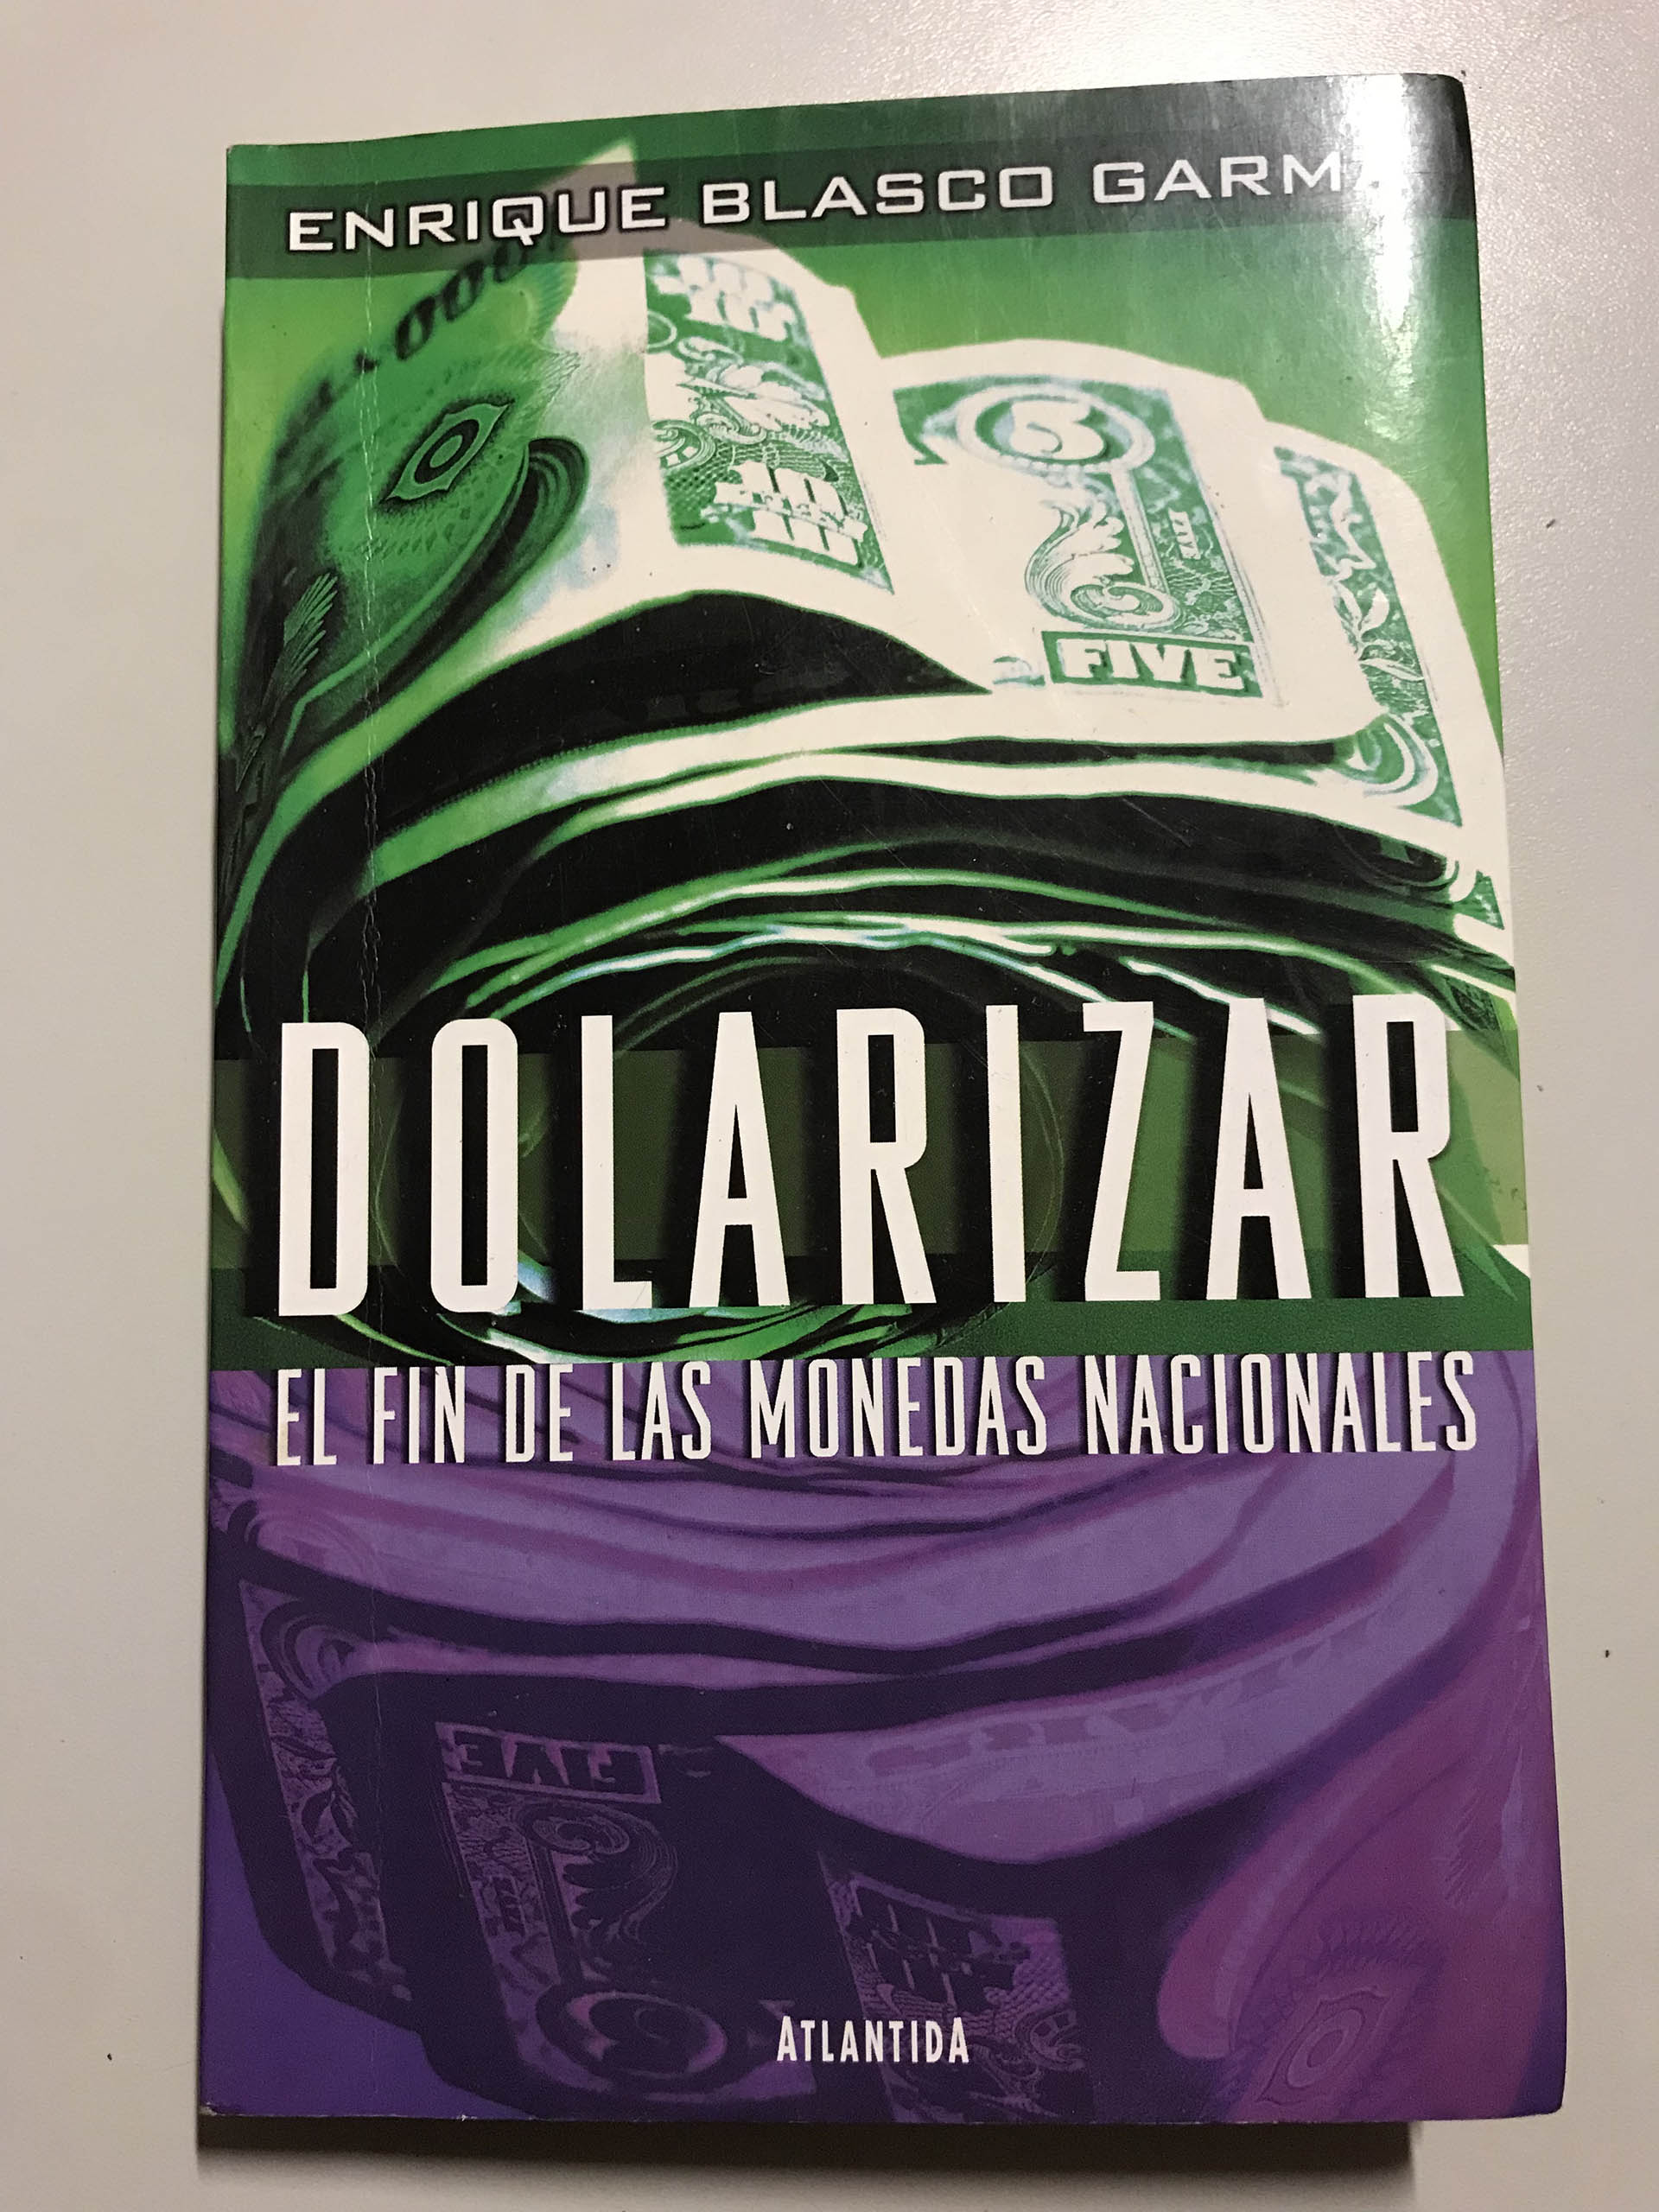 En 2001, Editorial Atlántida publicó mi libro Dolarizar, El Fin de las Monedas Nacionales, presentado por Carlos Menem y prestigiosos economistas